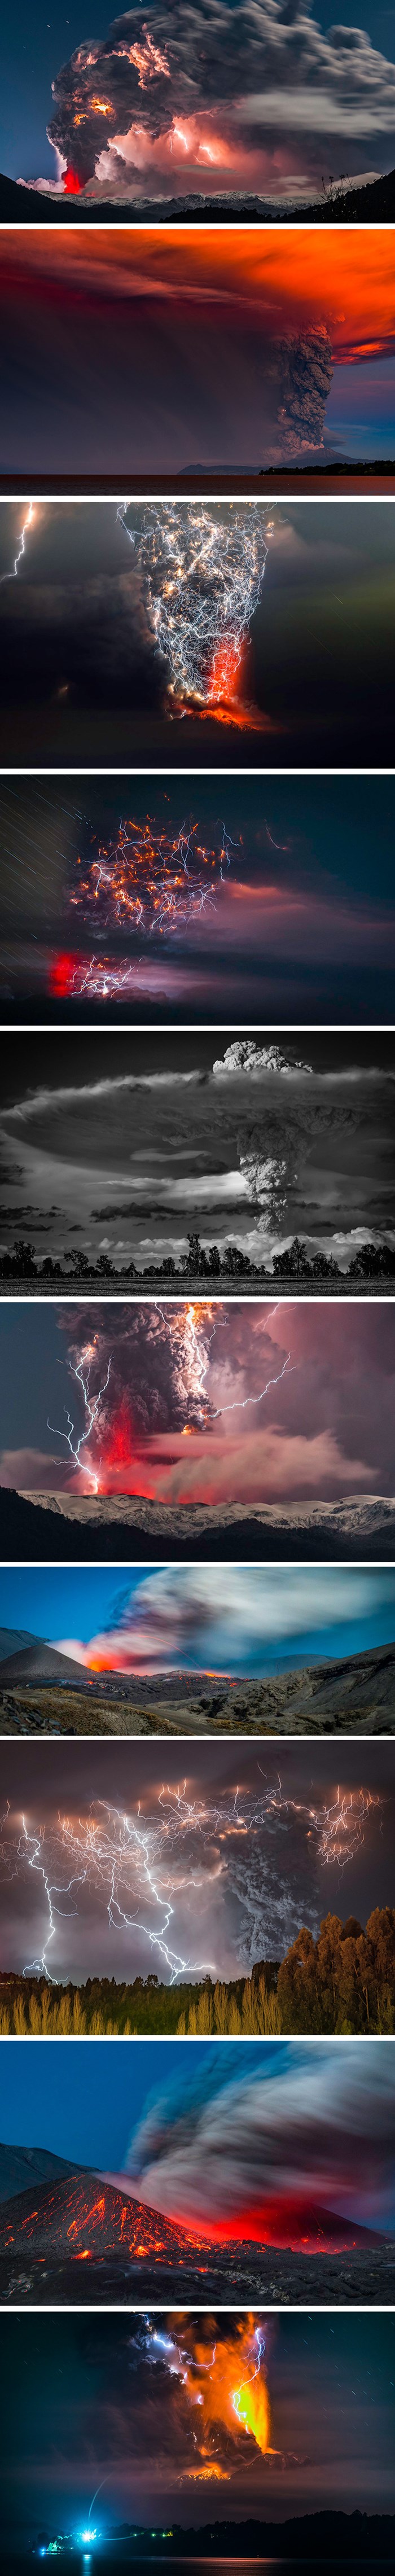 Zabilježio je moćne trenutke erupcija i munja putem fotki koje izgledaju kao scene iz filmova